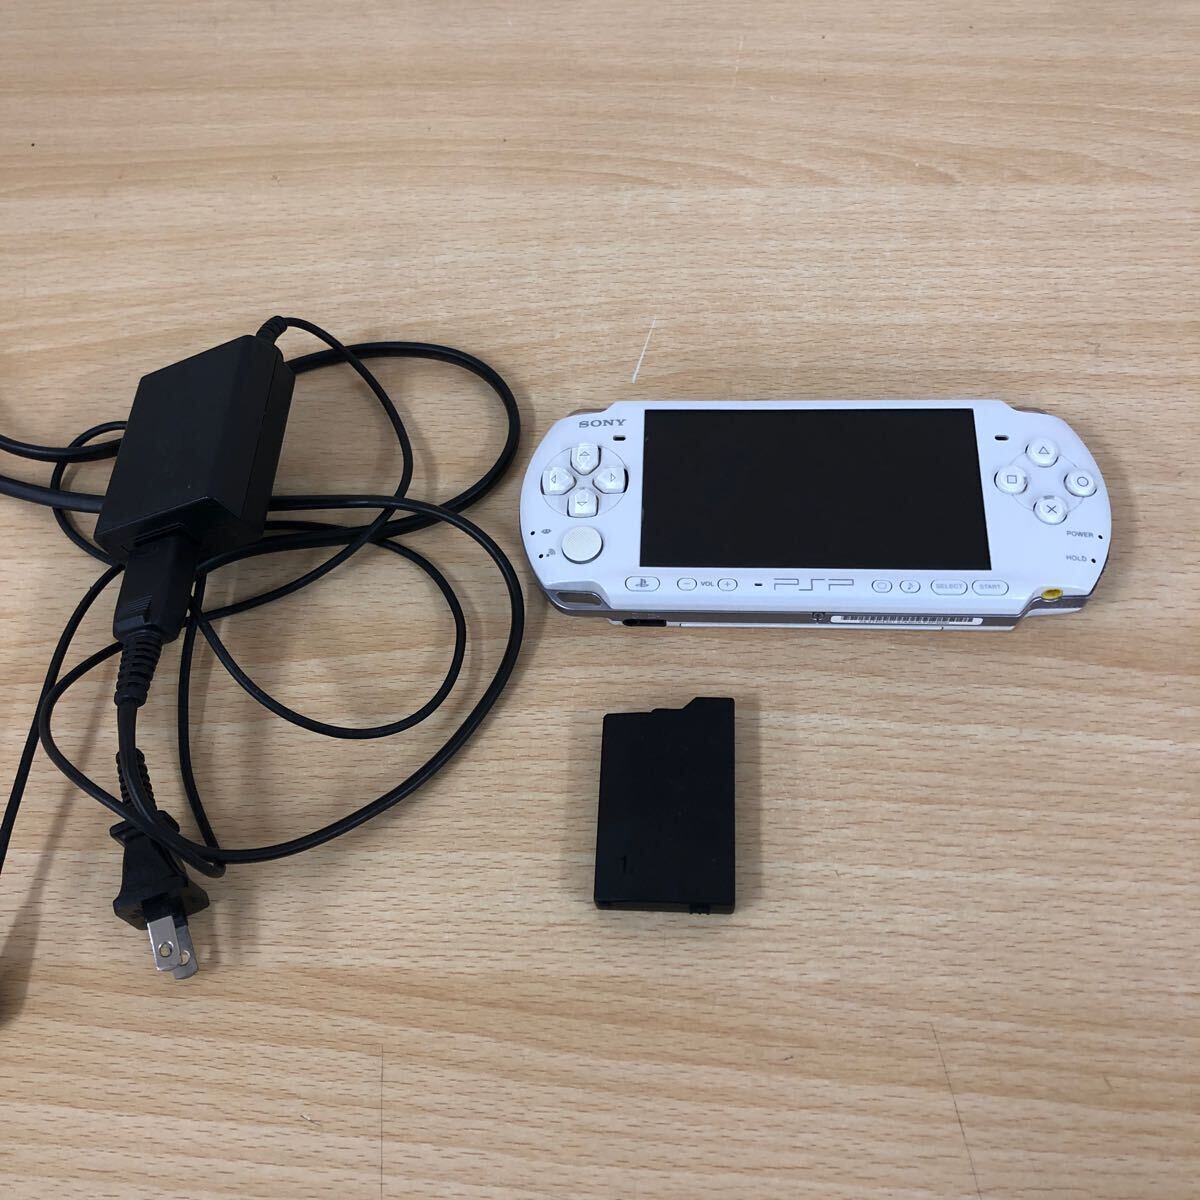 中古品 ソニー SONY プレステーション・ポータブル パールホワイト PSP-3000PW メモリ1GB PSP 本体・ゲーム機の画像1